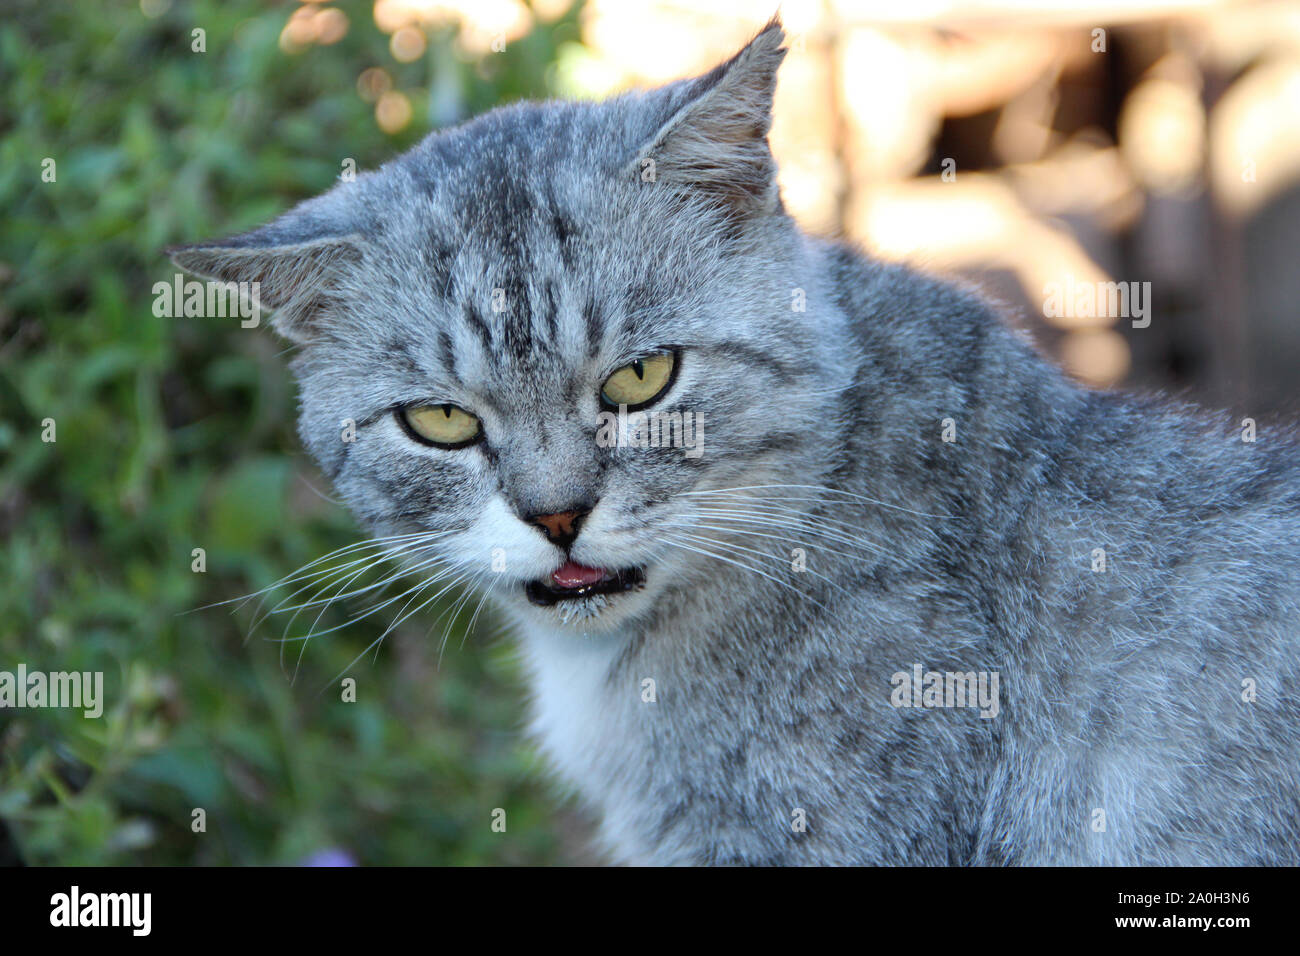 Scottish straight cat looking round in yard. Beautiful Scottish straight cat. Domestic animal Stock Photo